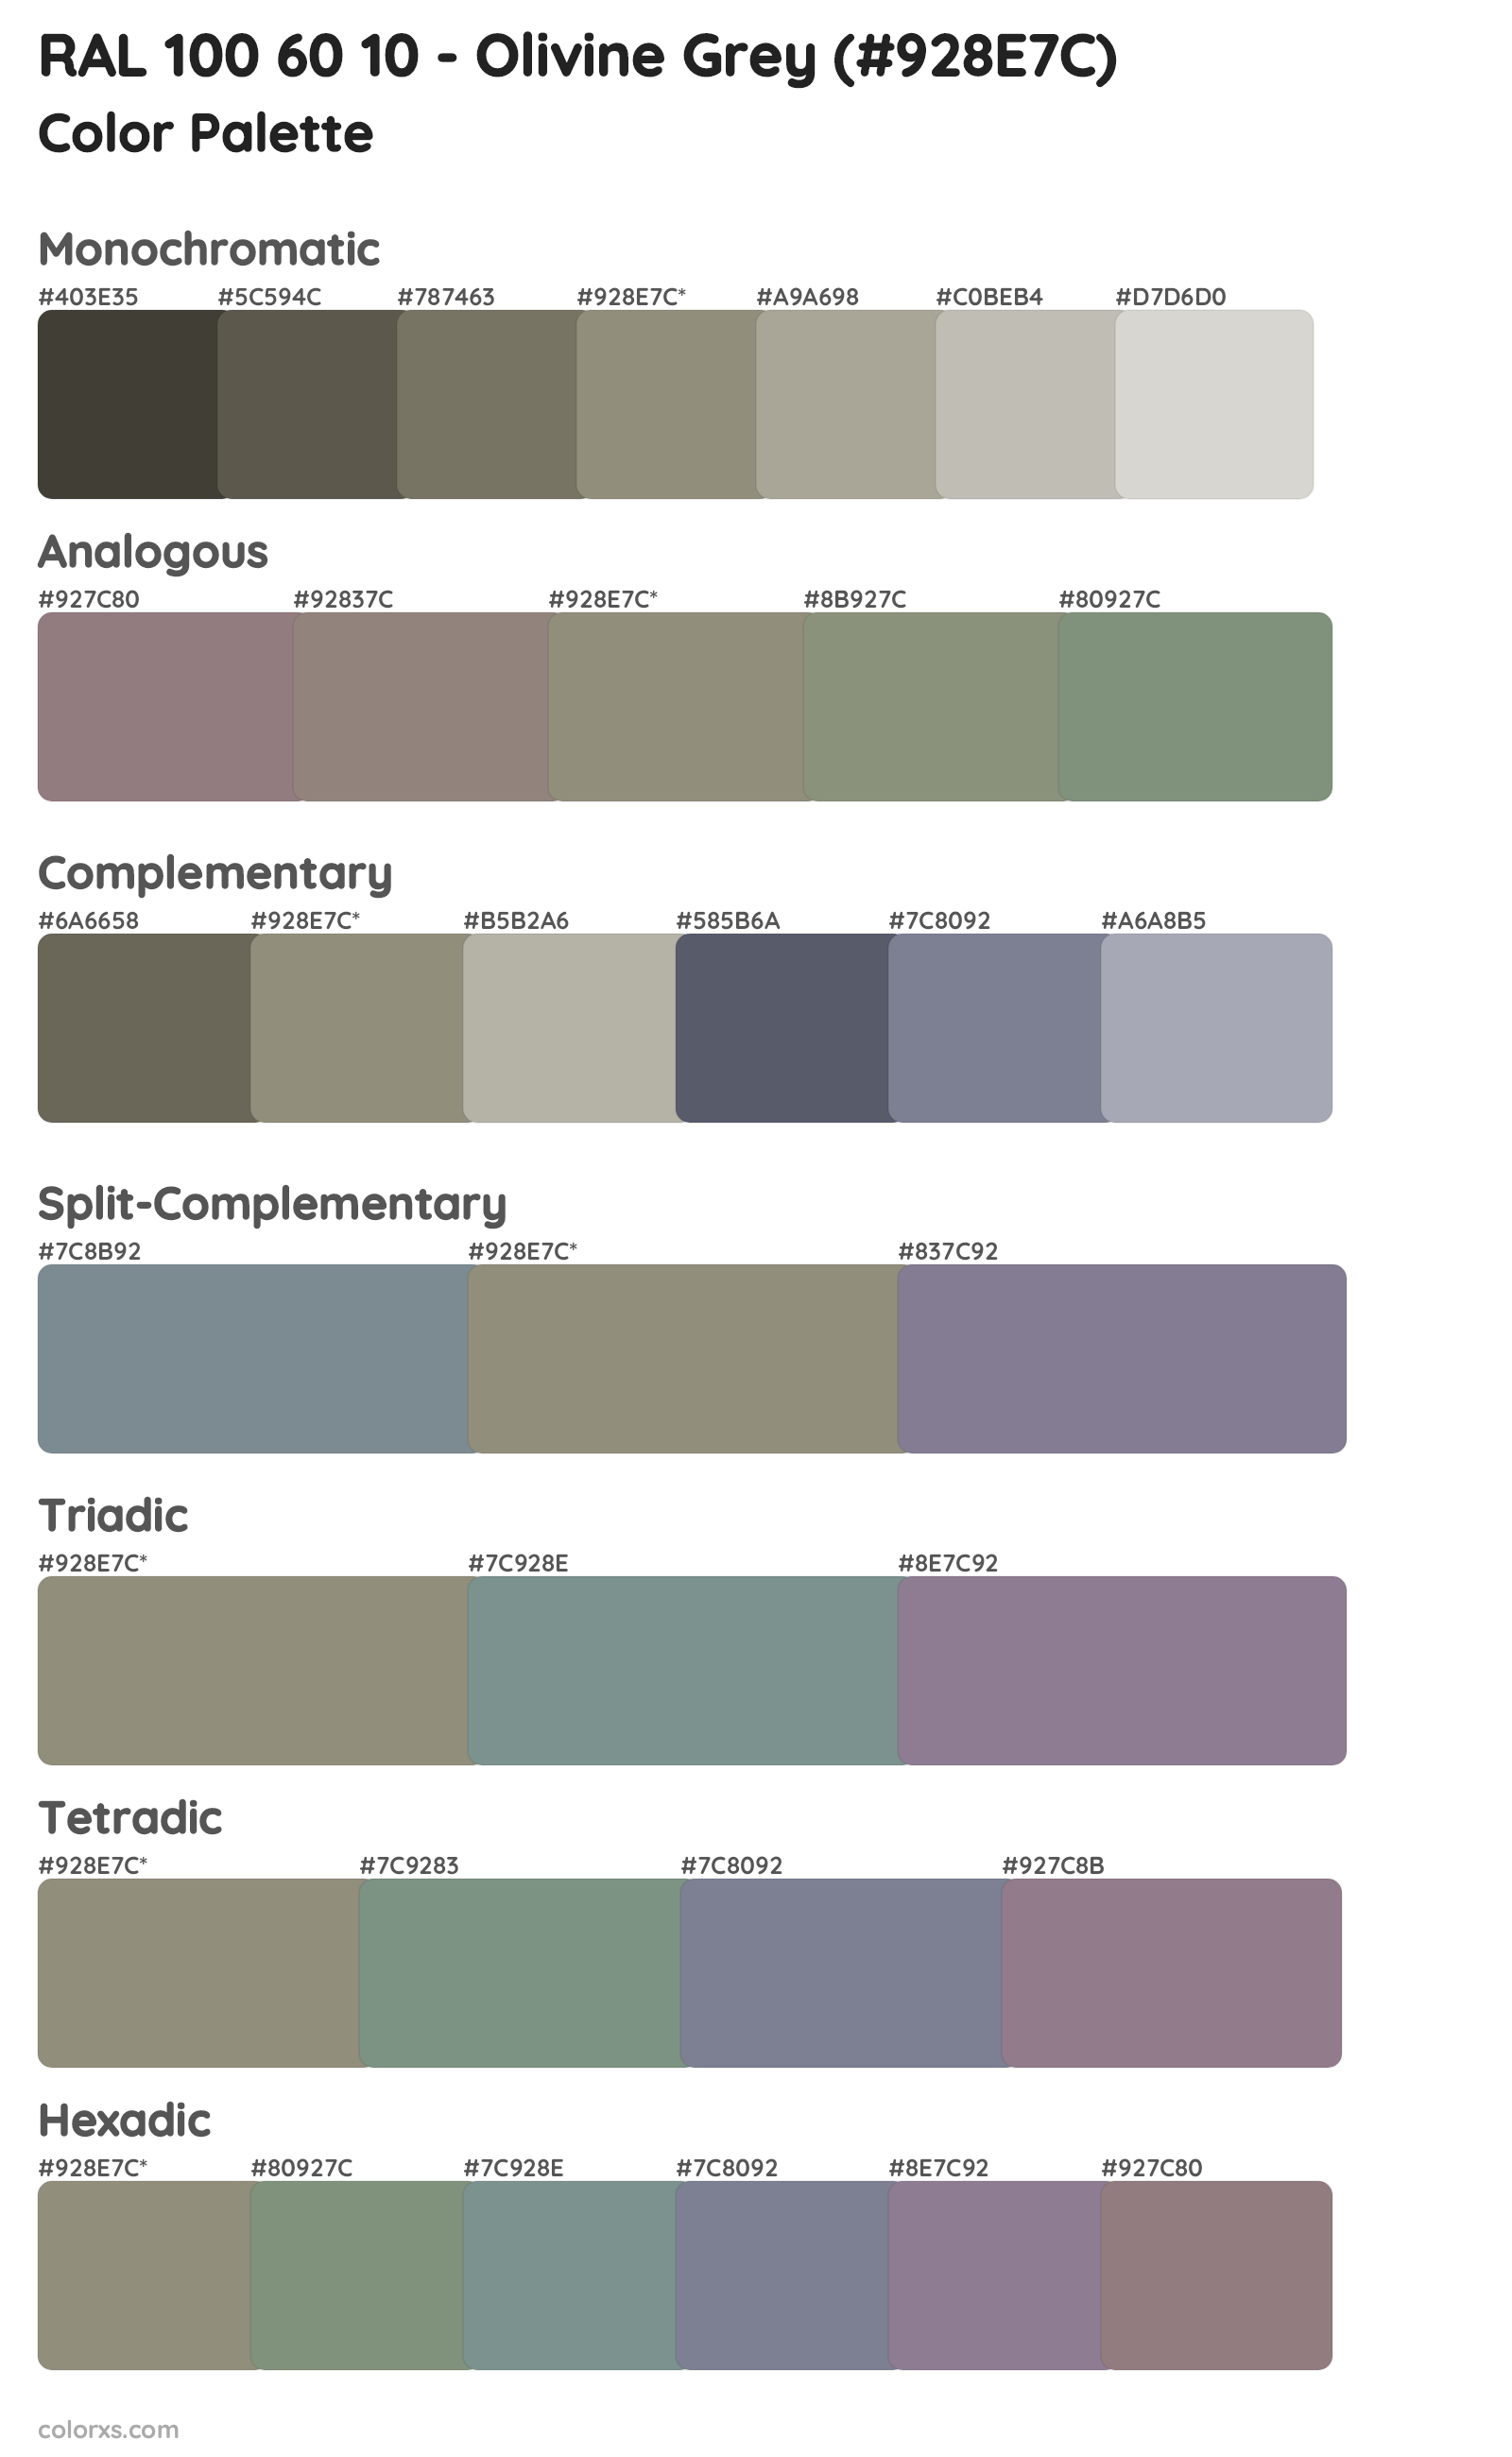 RAL 100 60 10 - Olivine Grey Color Scheme Palettes